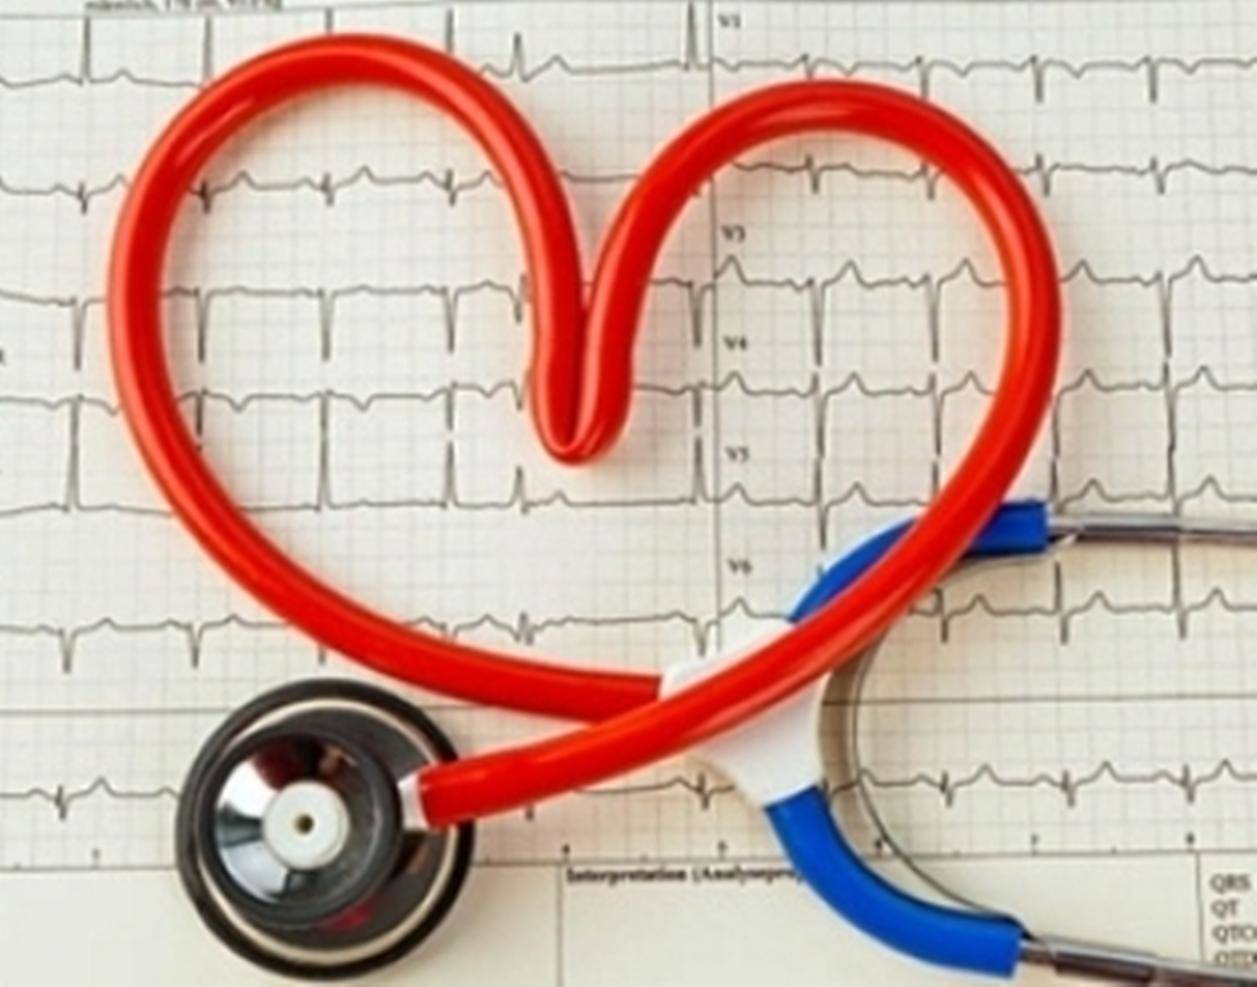 कैल्शियम के कण दे सकते हैं दिल के रोग का संकेत